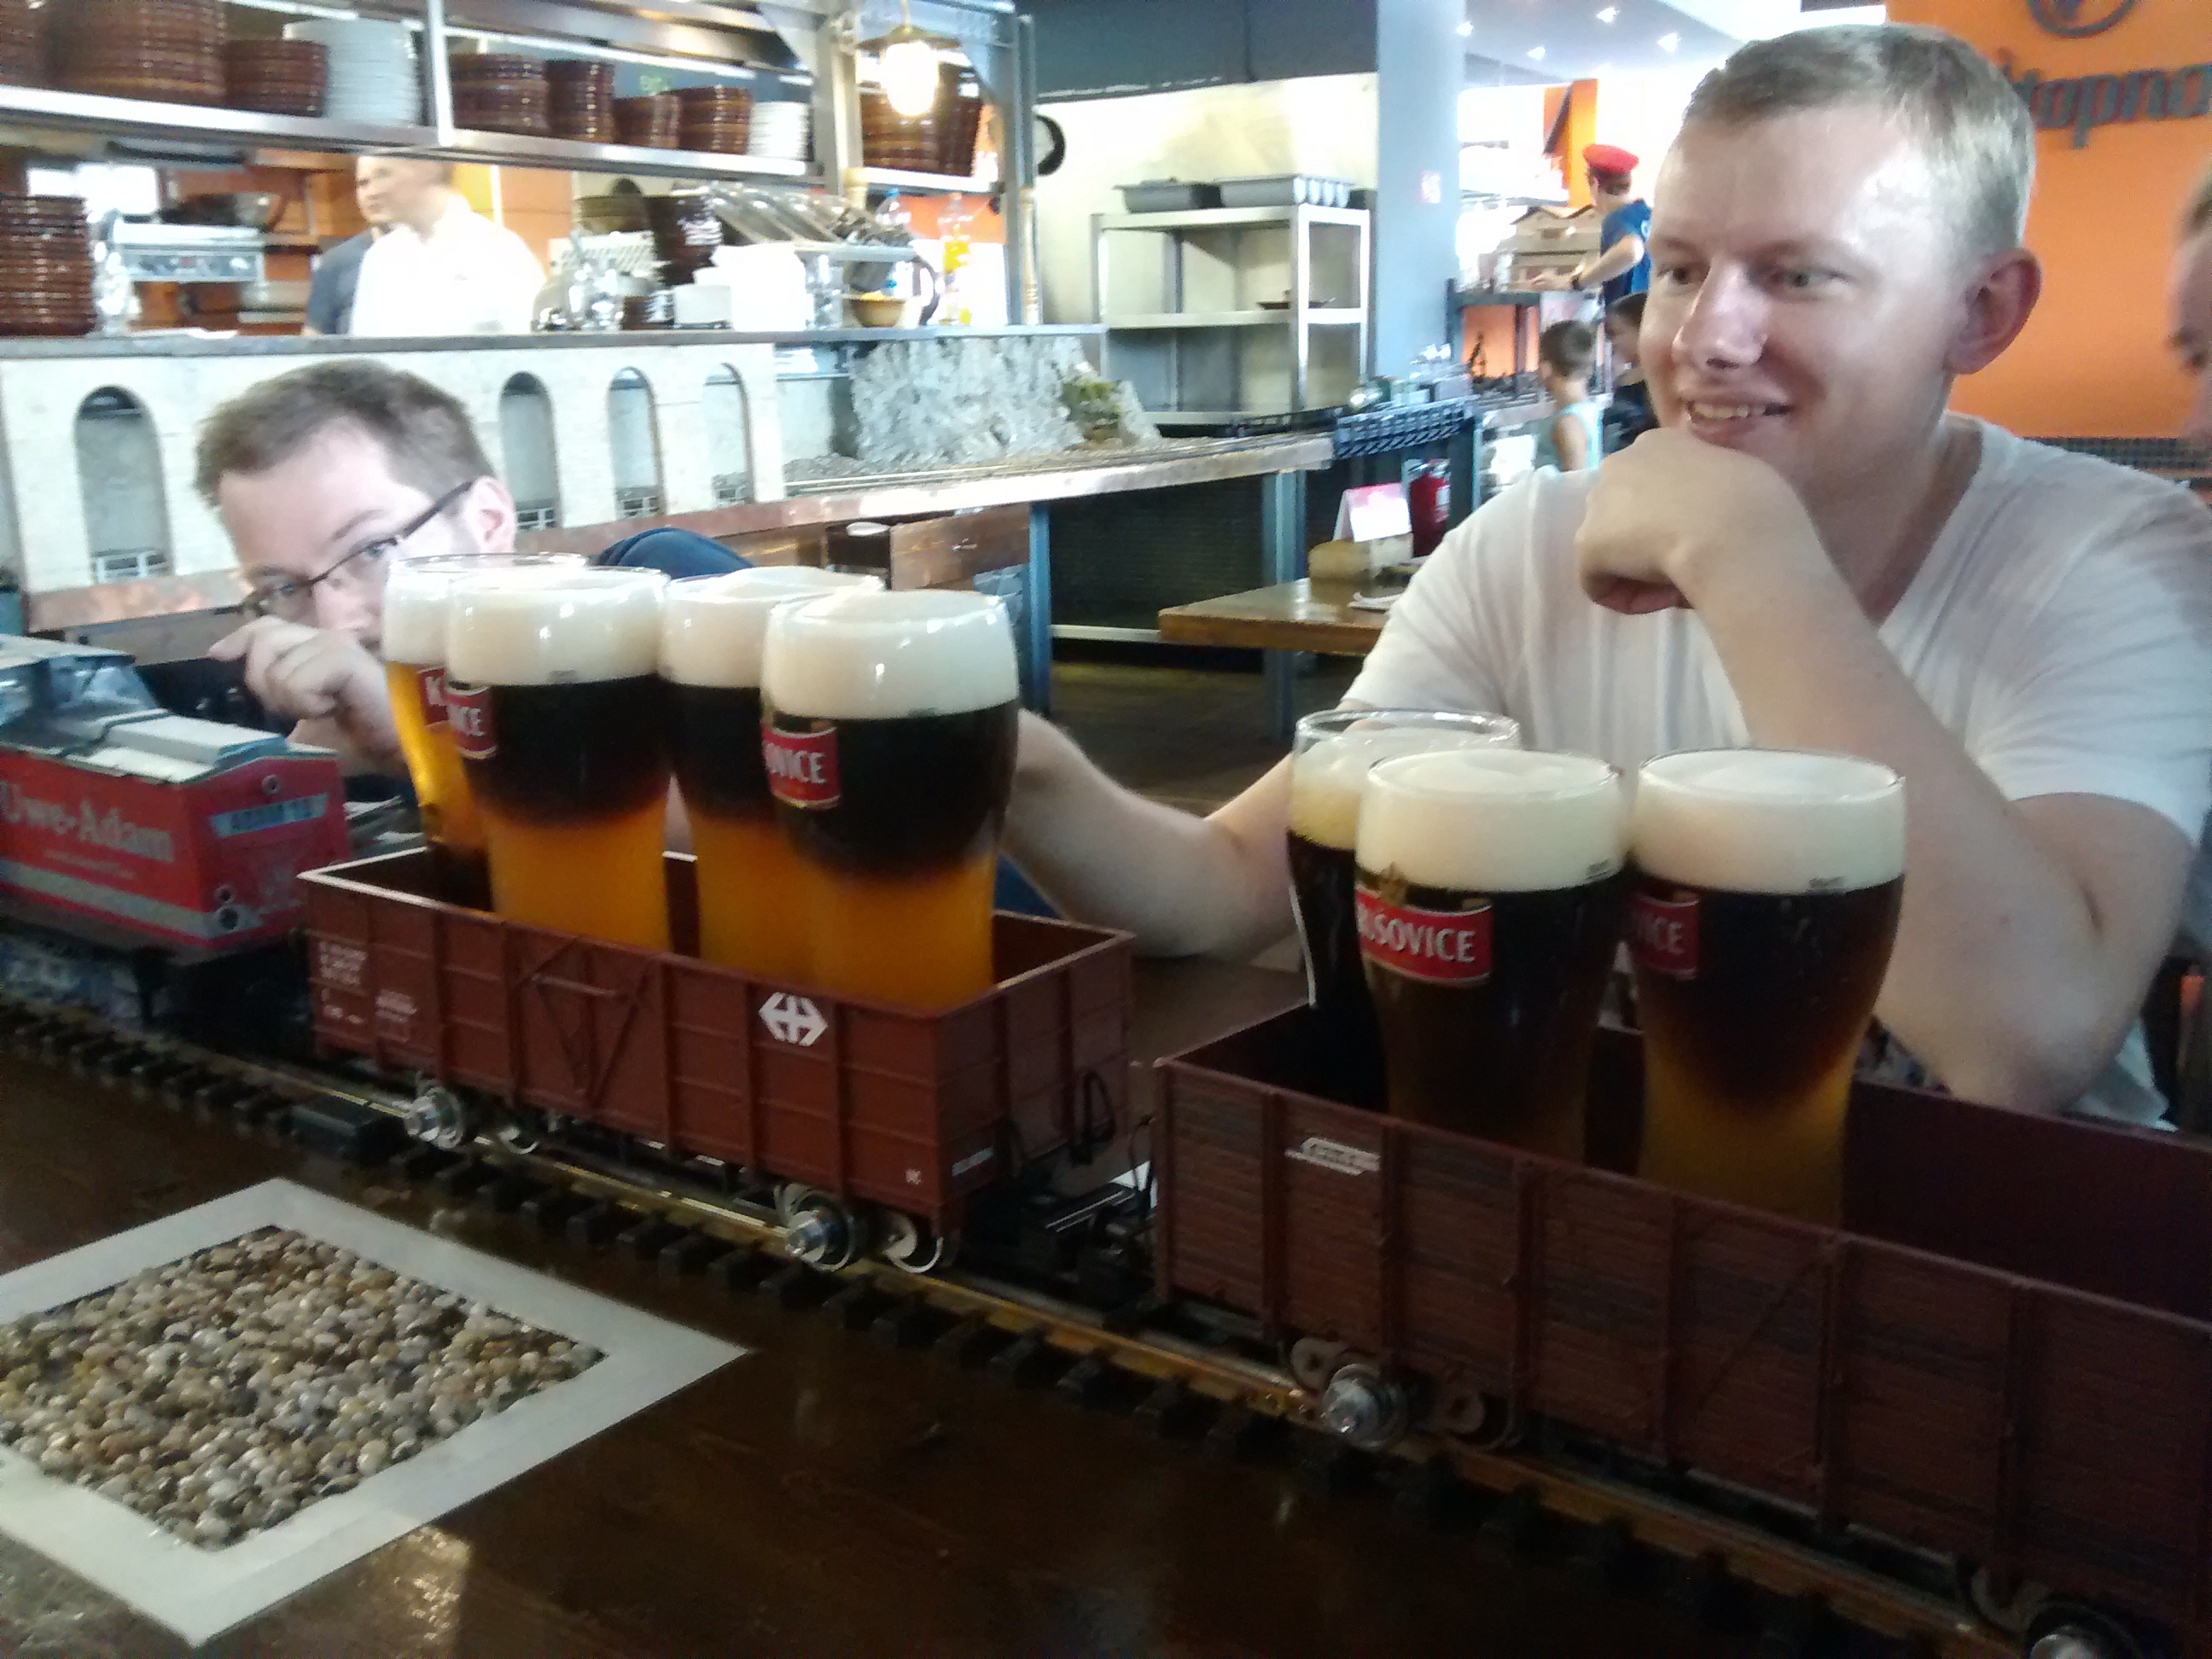 Choo choo. Here comes the beer train.